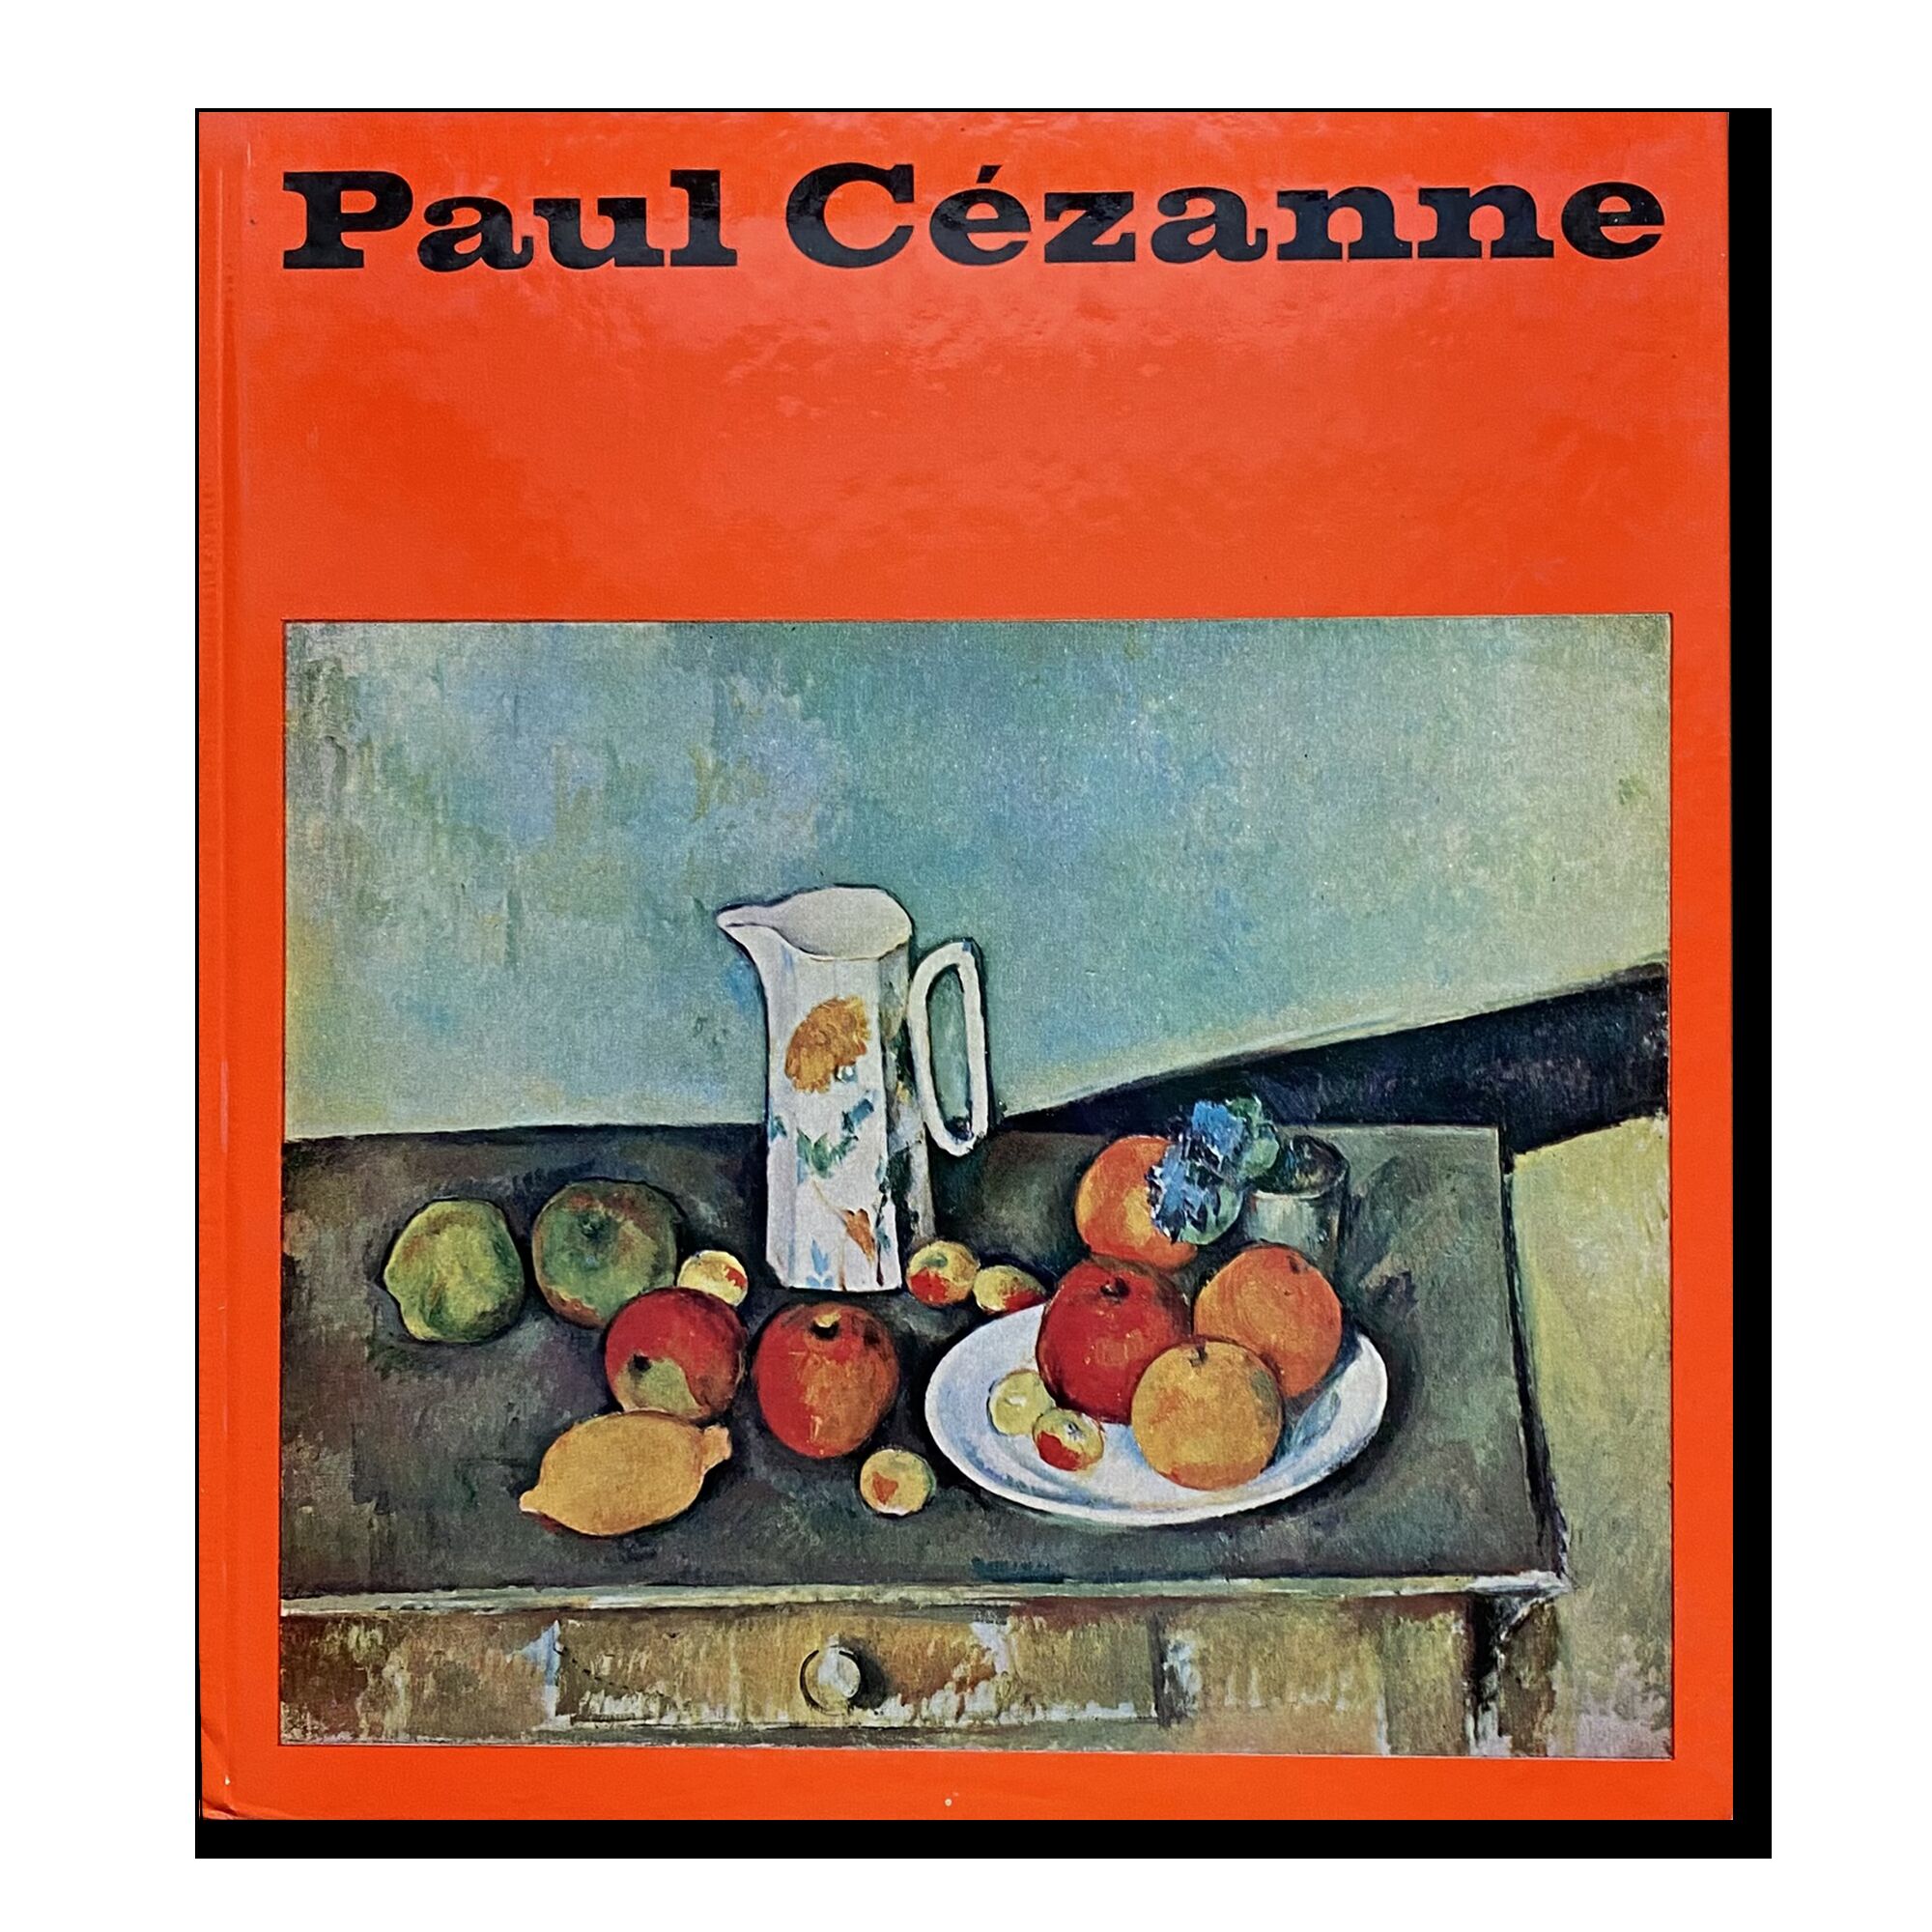 Paul Cezanne 1976